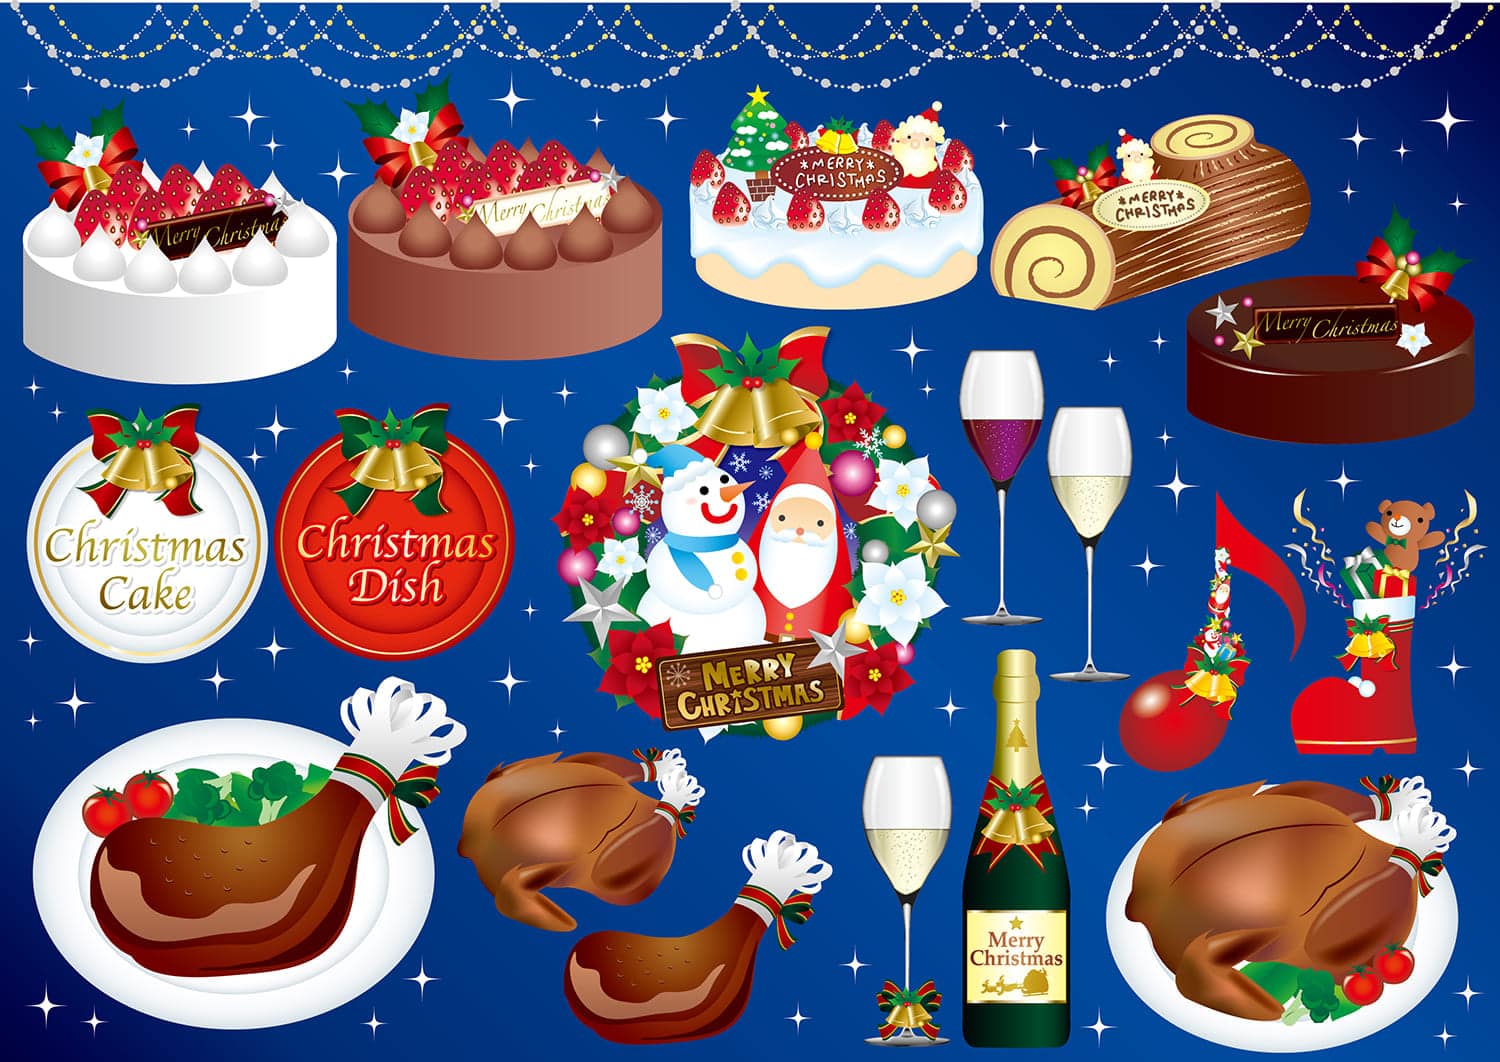 21ケーキ屋さんのクリスマスケーキ予約方法 特典まとめ シャトレーゼ 不二家 コージーコーナー コンビニとファミレスのスイーツのおすすめを紹介するブログ